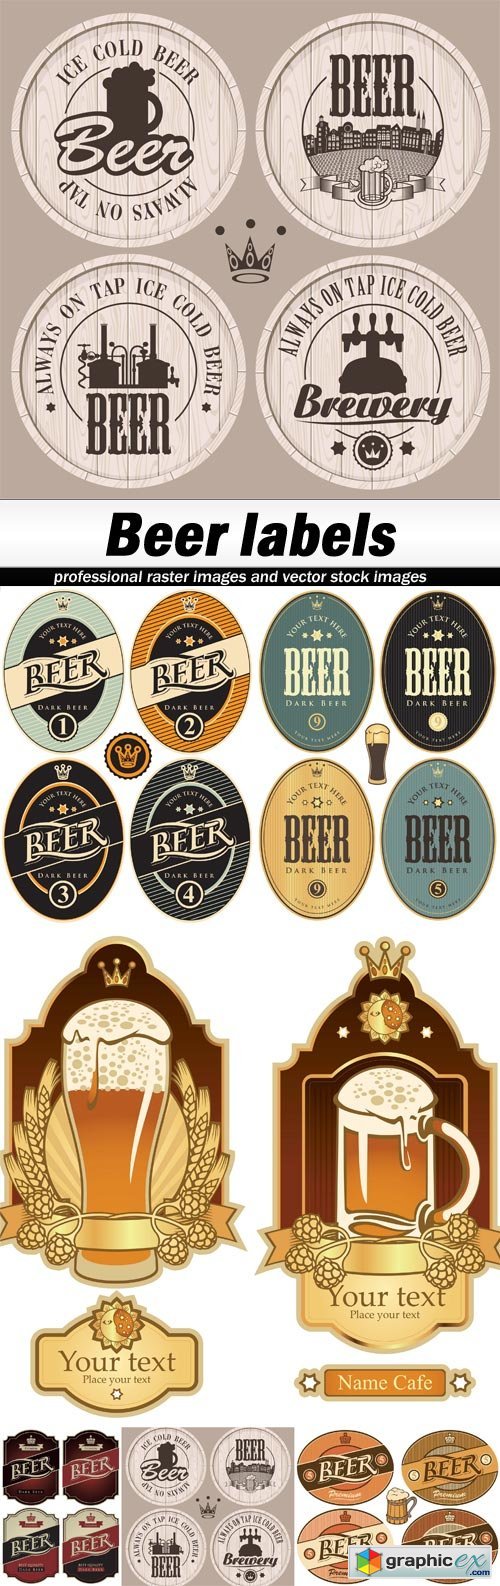  Beer labels